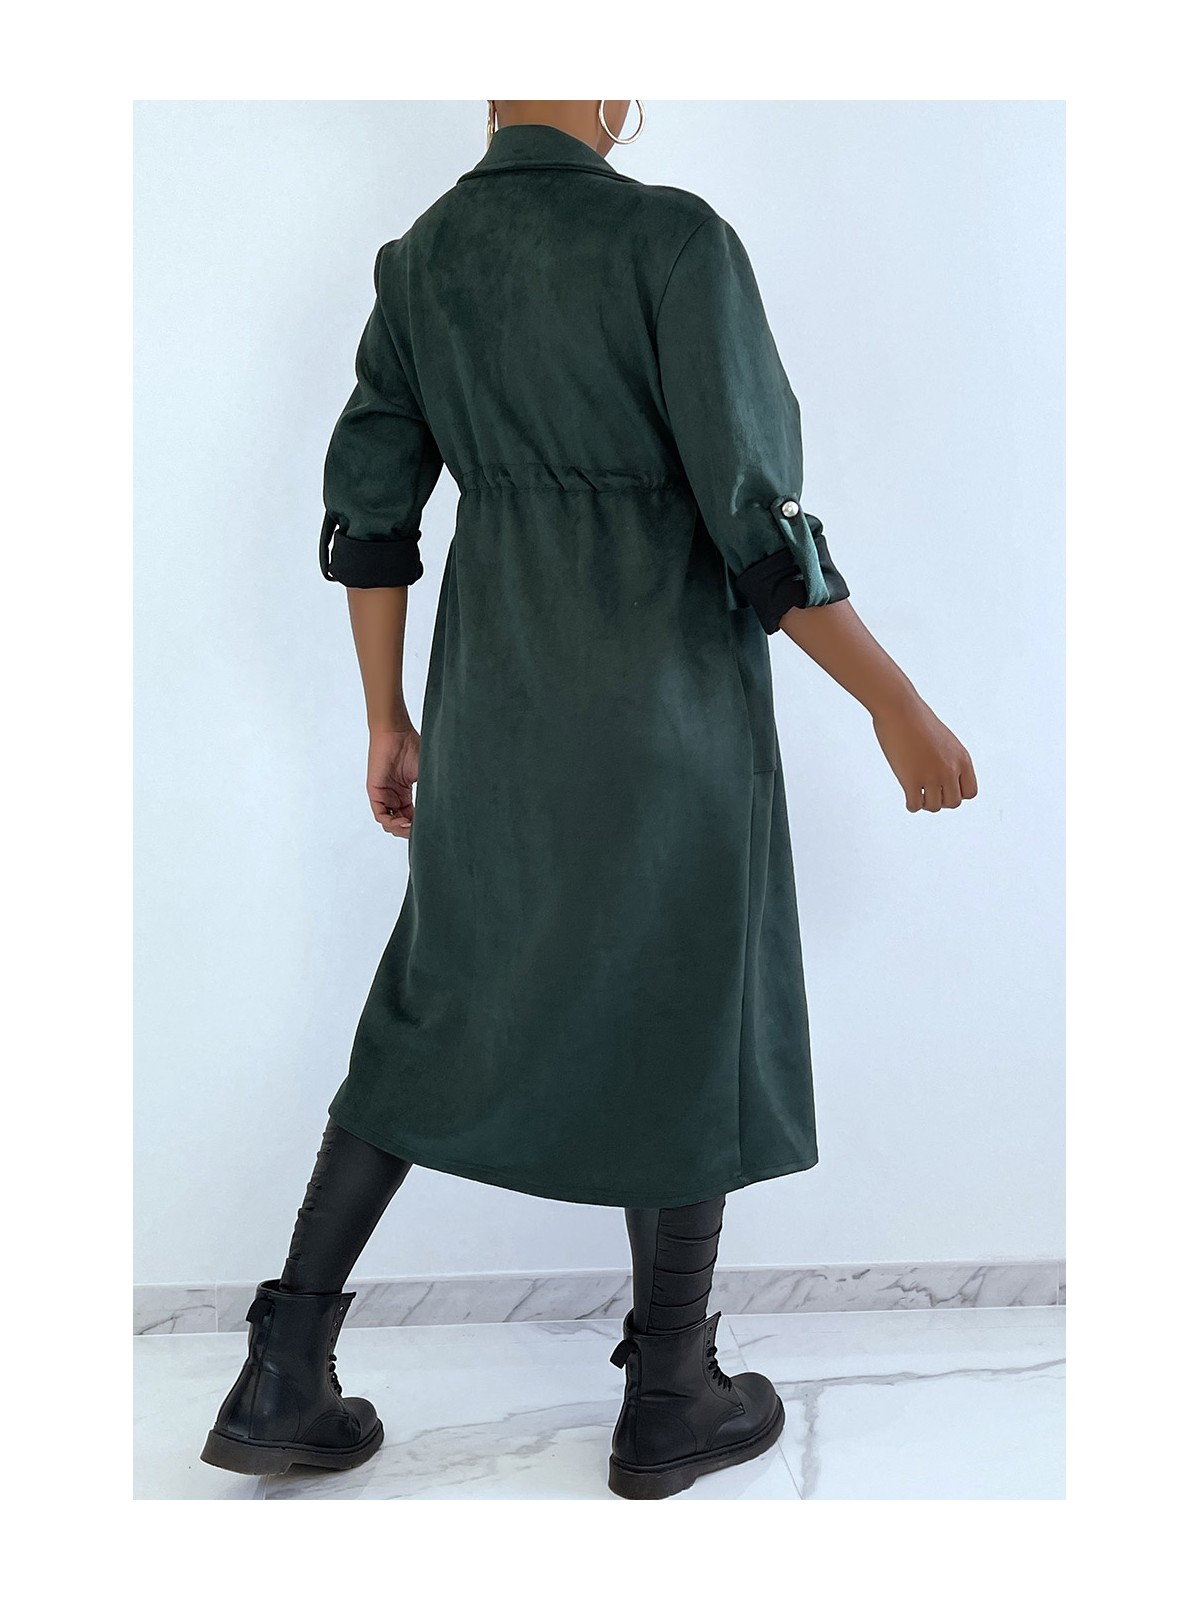 Manteau trench en suédine verte ajustable à la taille - 4